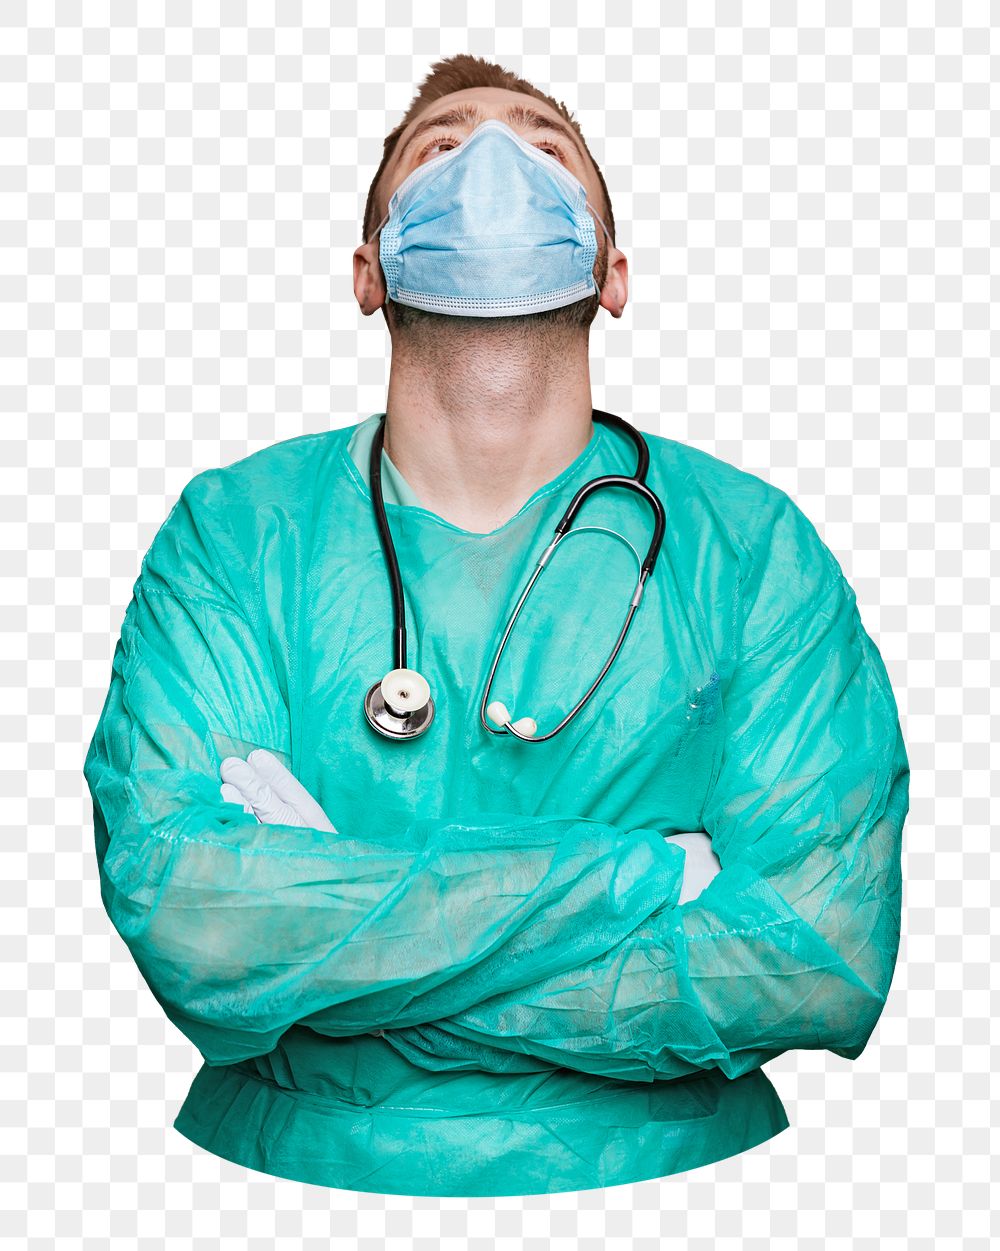 Png medical hospital doctor, transparent background